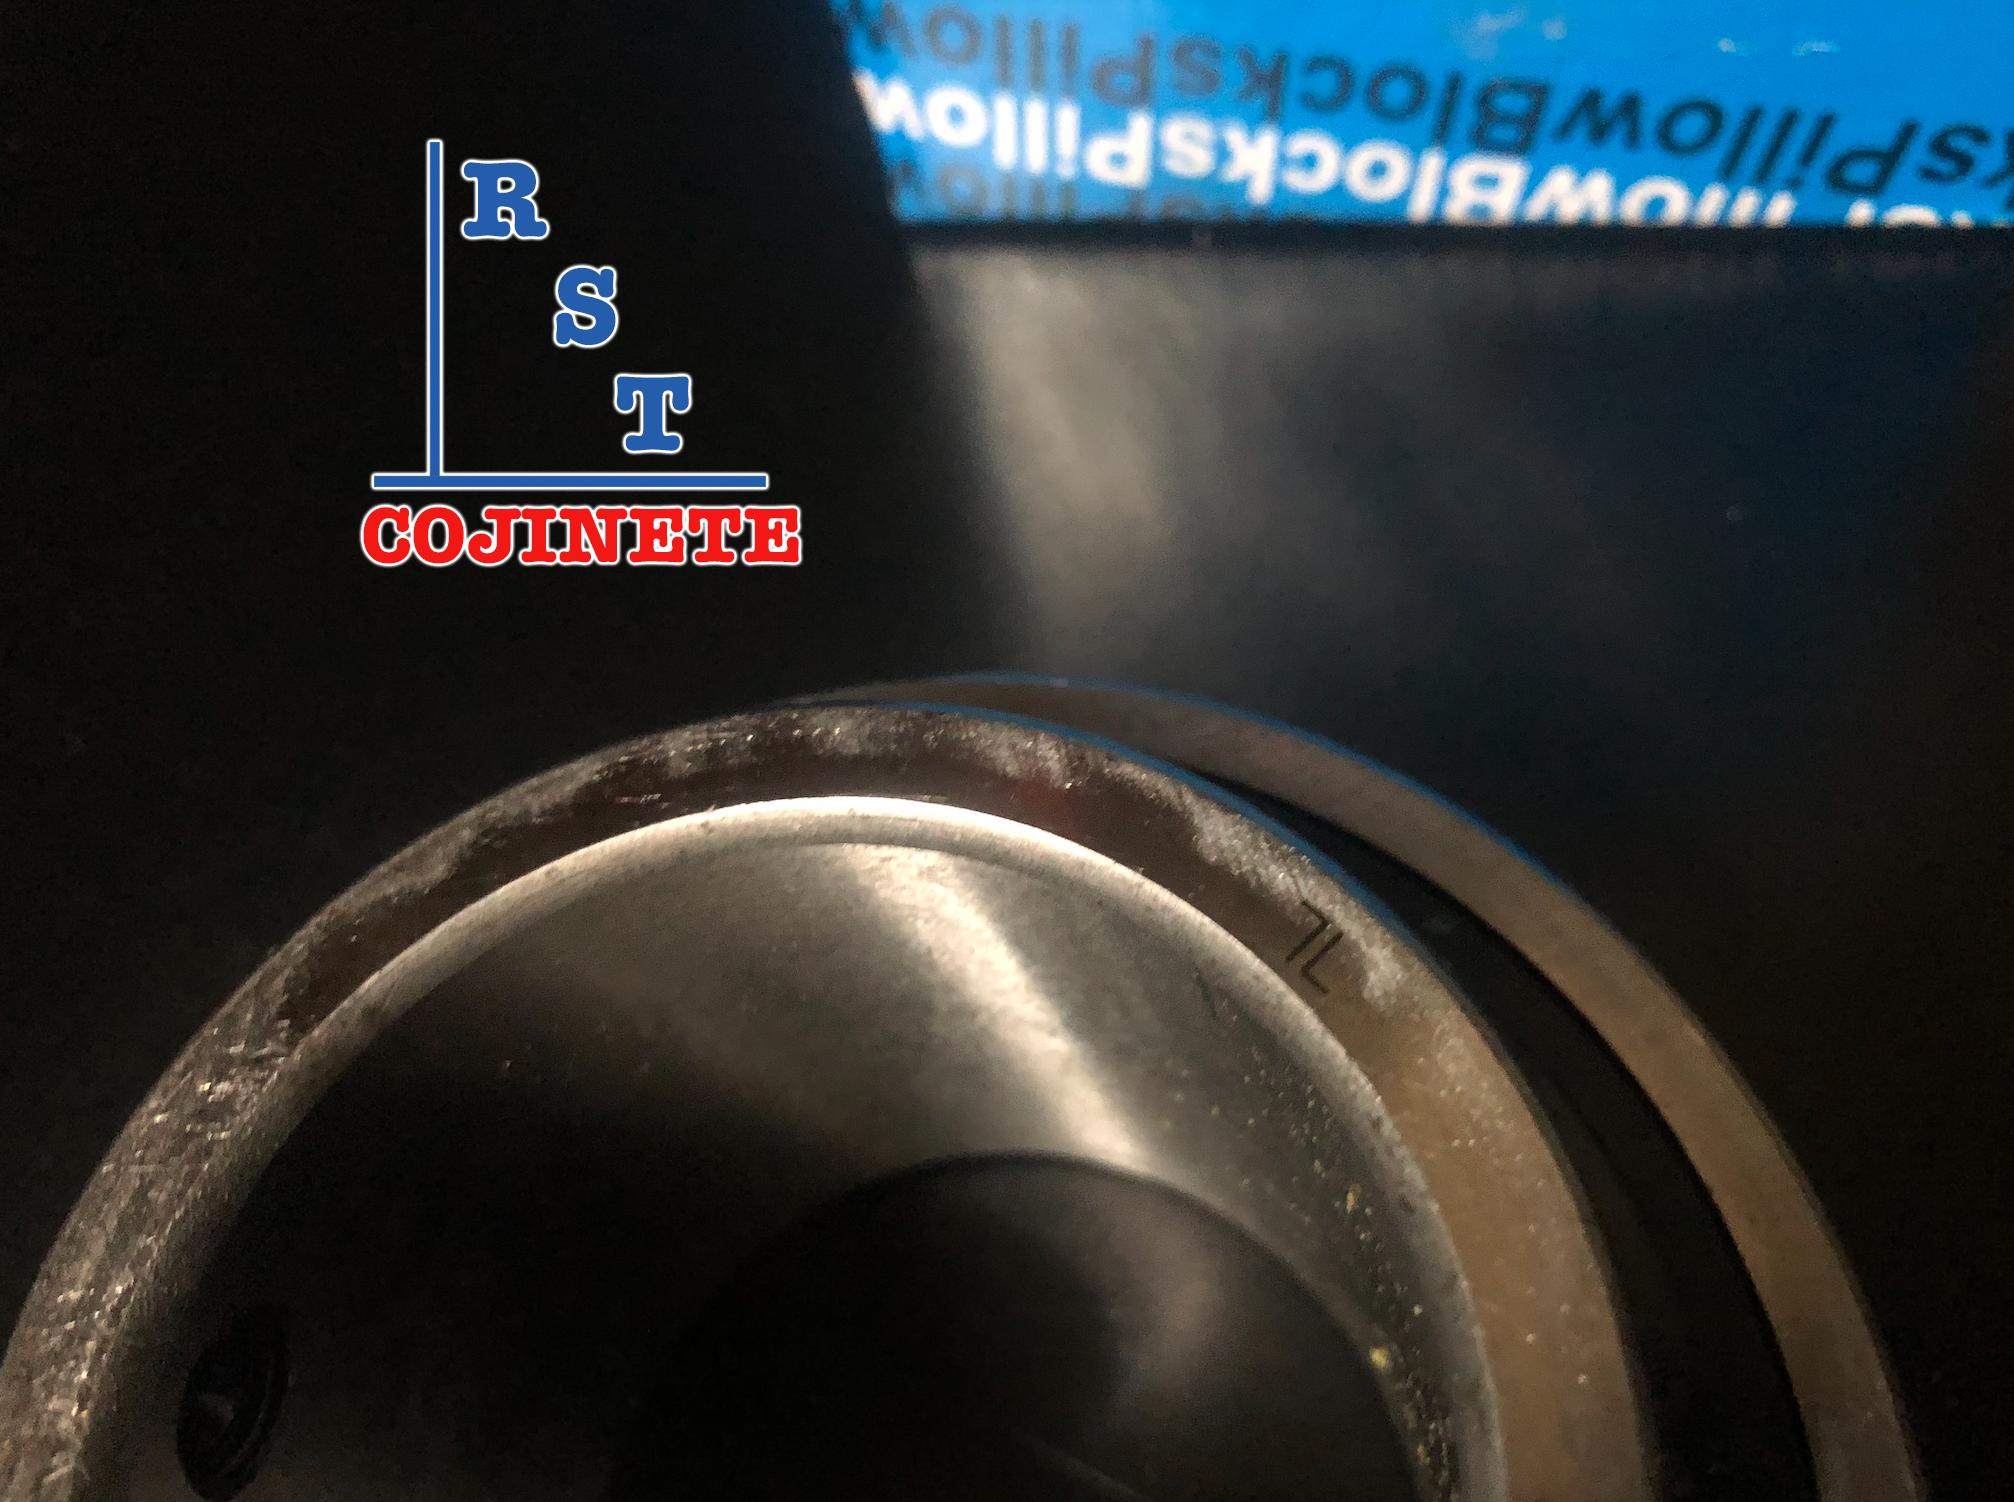 Cojinete insertable UC213 | Rodamiento para eje de 65mm rígido de bolas con sello de hule para chumacera